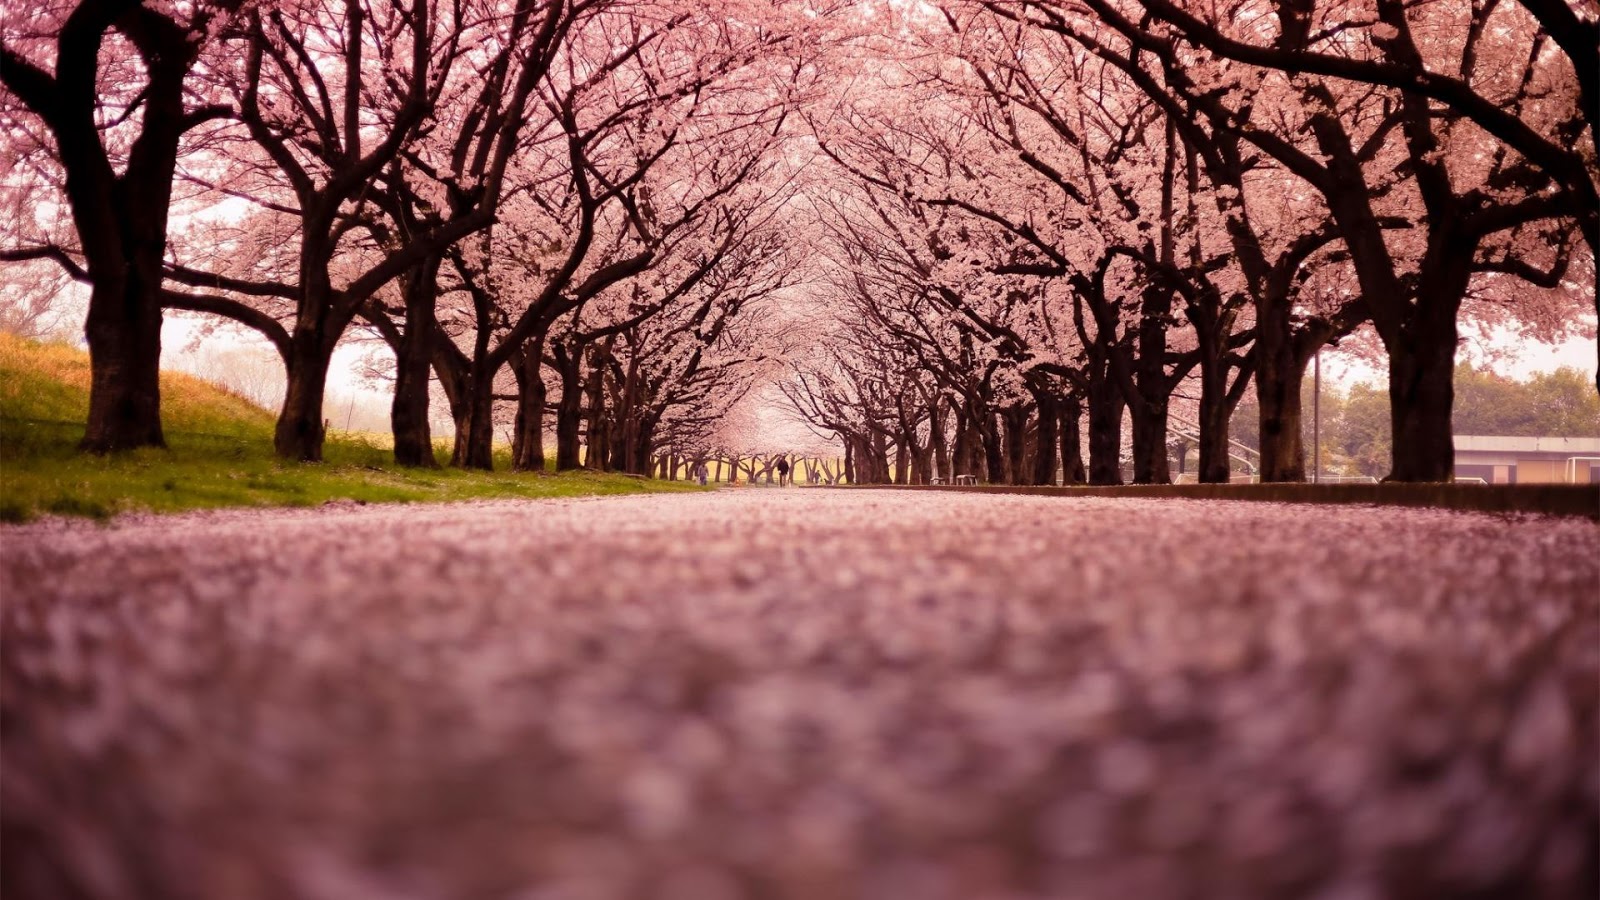 wallpaper bunga sakura bergerak,nature,tree,natural landscape,sky,branch